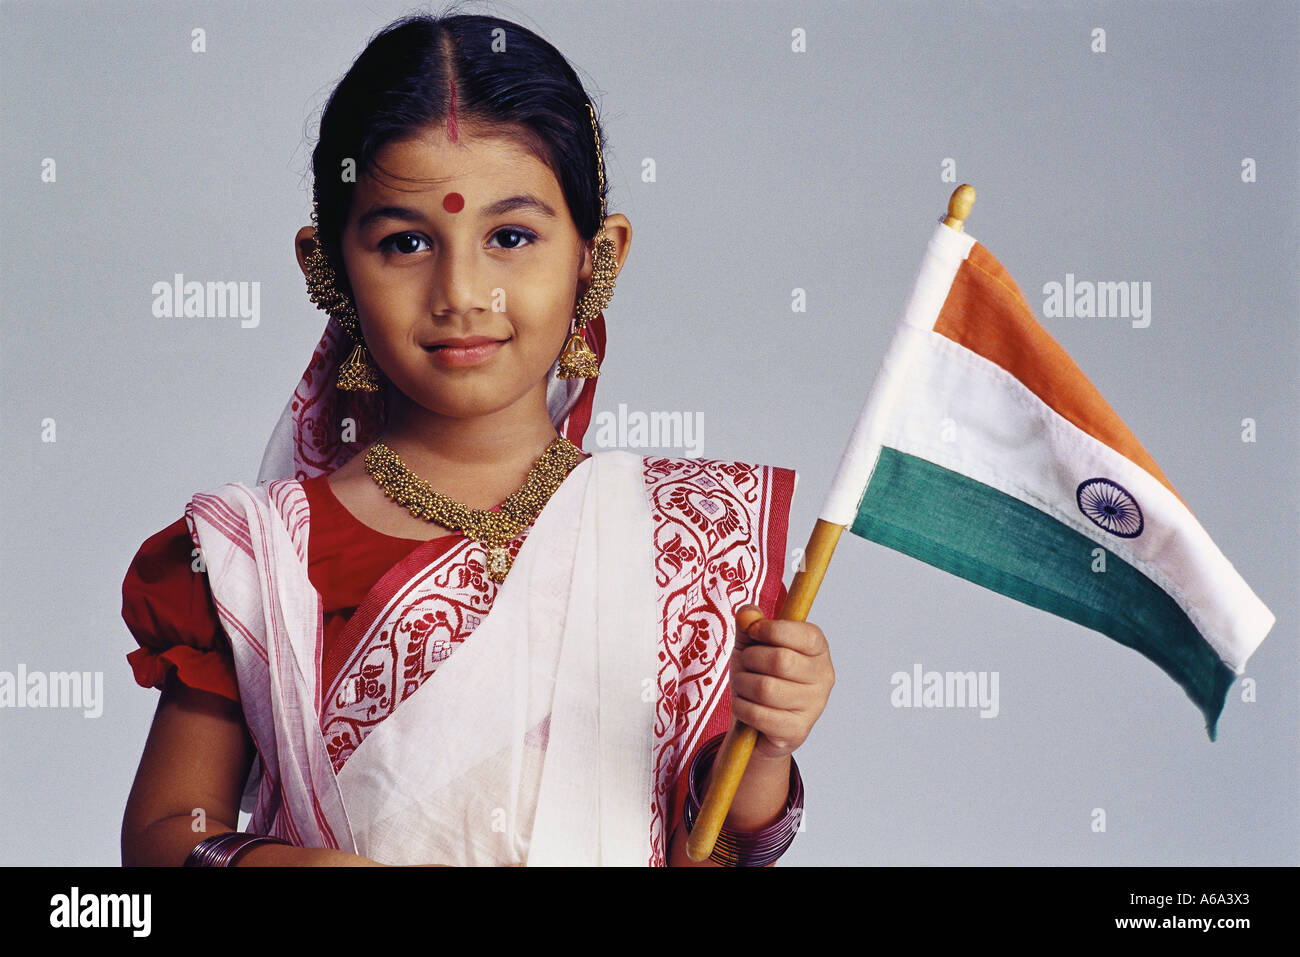 Bengali indien girl Waving Flag de l'Inde portant sari traditionnel bindi point sur le front de l'Asie de l'Inde Numéro 501 Parution du modèle Banque D'Images